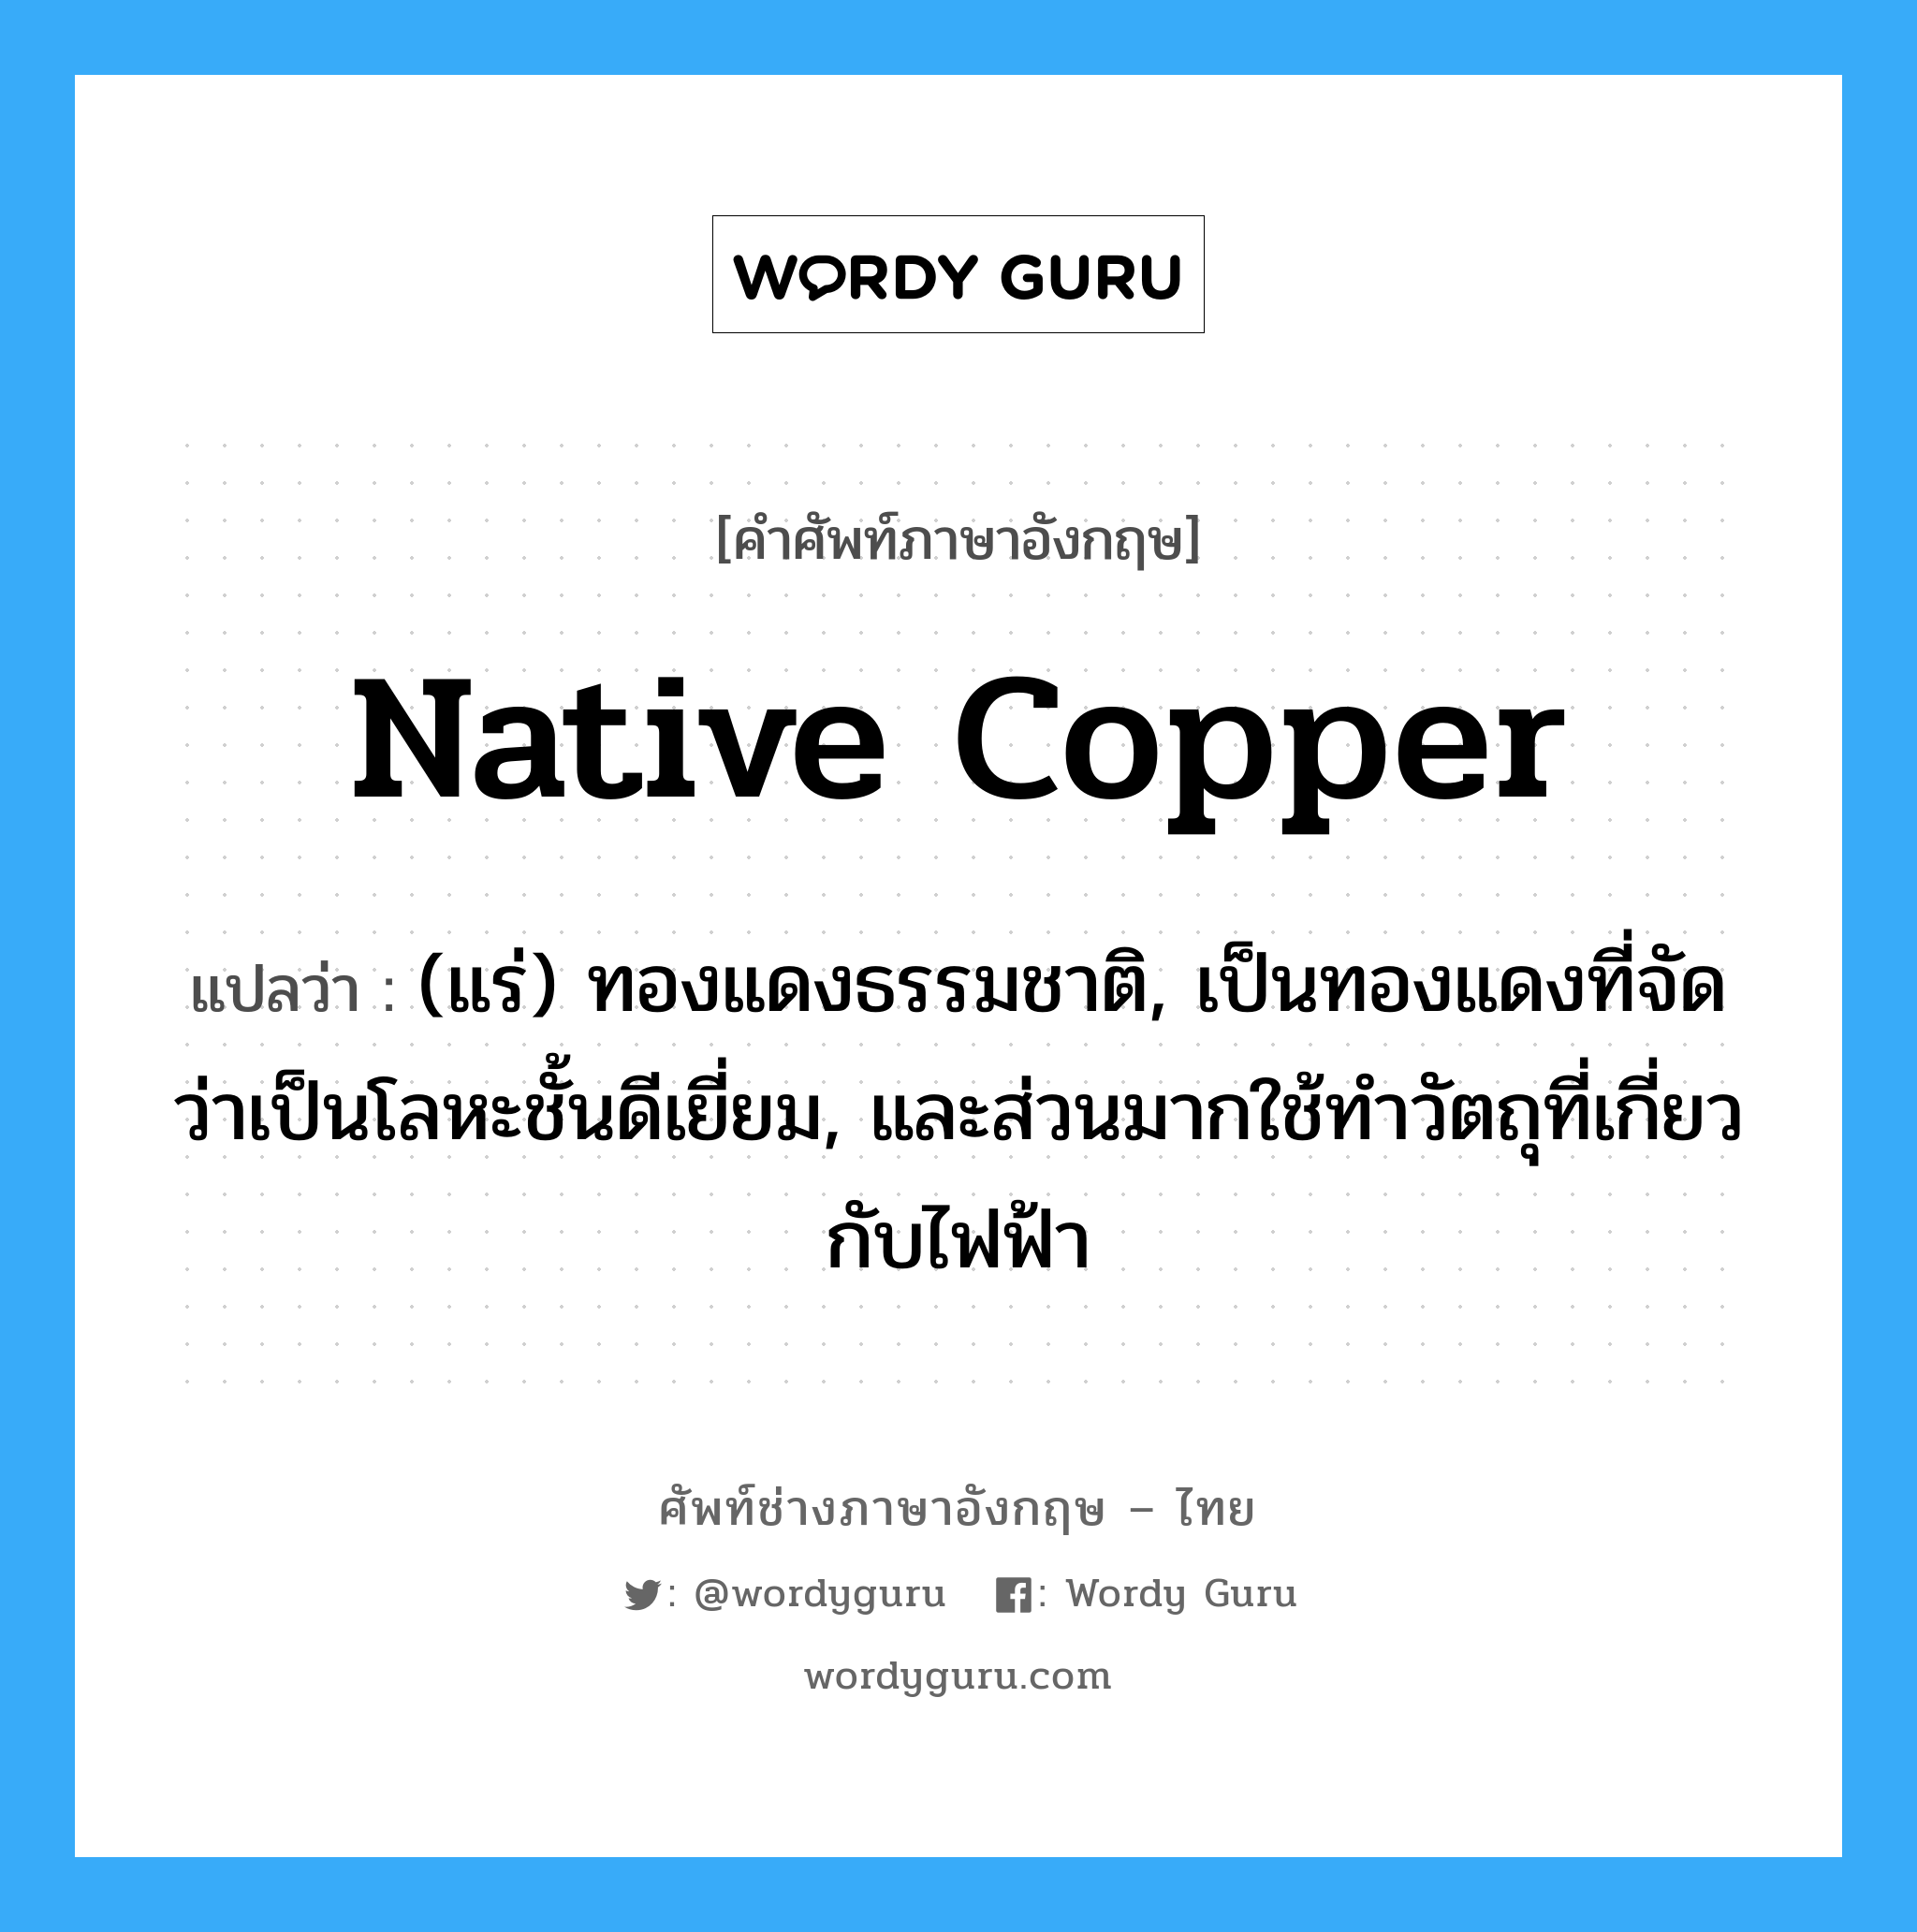 native copper แปลว่า?, คำศัพท์ช่างภาษาอังกฤษ - ไทย native copper คำศัพท์ภาษาอังกฤษ native copper แปลว่า (แร่) ทองแดงธรรมชาติ, เป็นทองแดงที่จัดว่าเป็นโลหะชั้นดีเยี่ยม, และส่วนมากใช้ทำวัตถุที่เกี่ยวกับไฟฟ้า